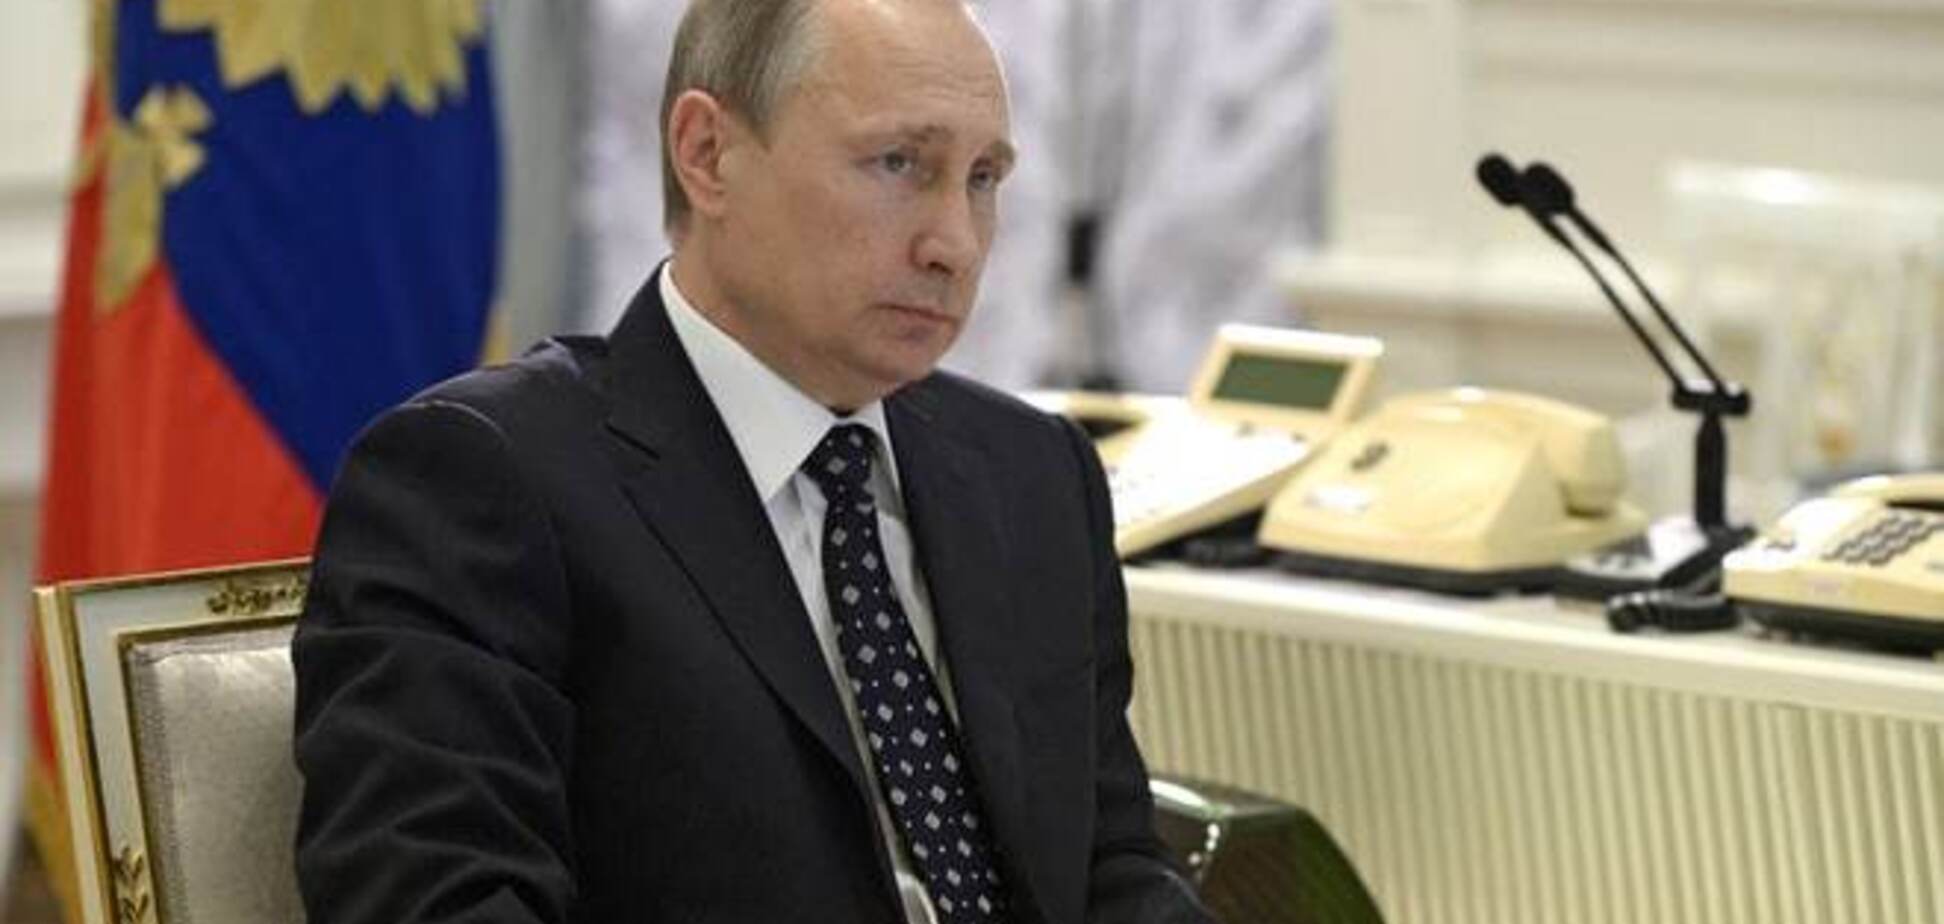 Как живет Путин: интересные факты о президенте России